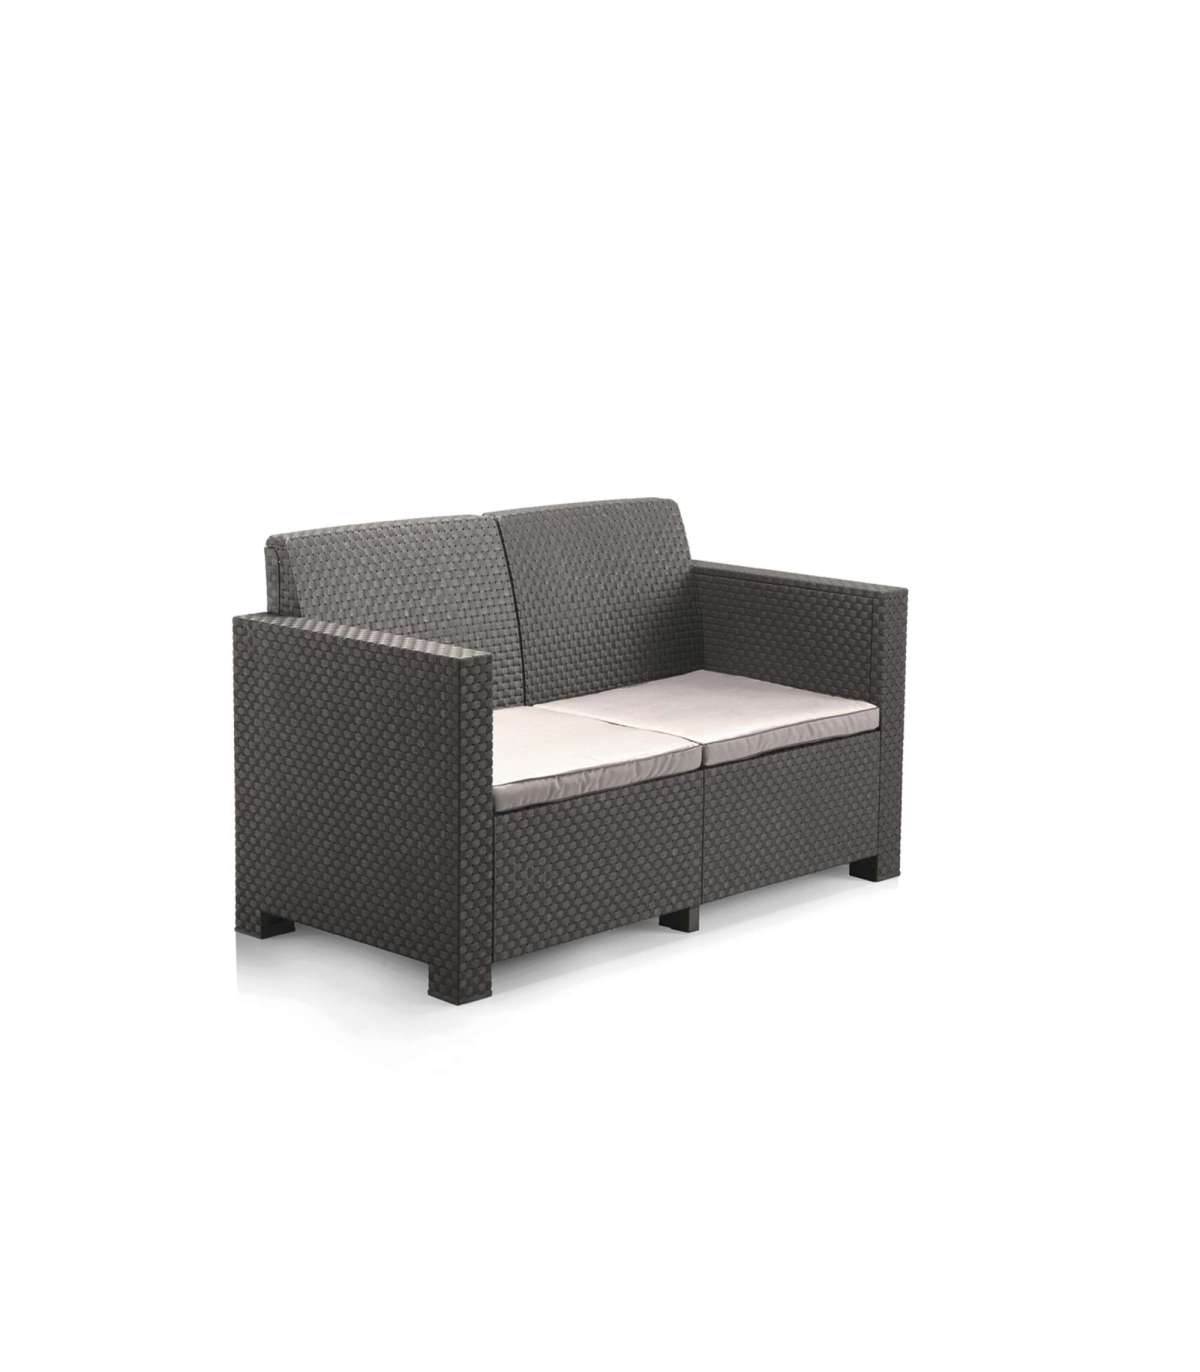 Set de exterior Valldemosa de sofá 2 plazas, 2 sillones y mesa de centro -  Compra Online